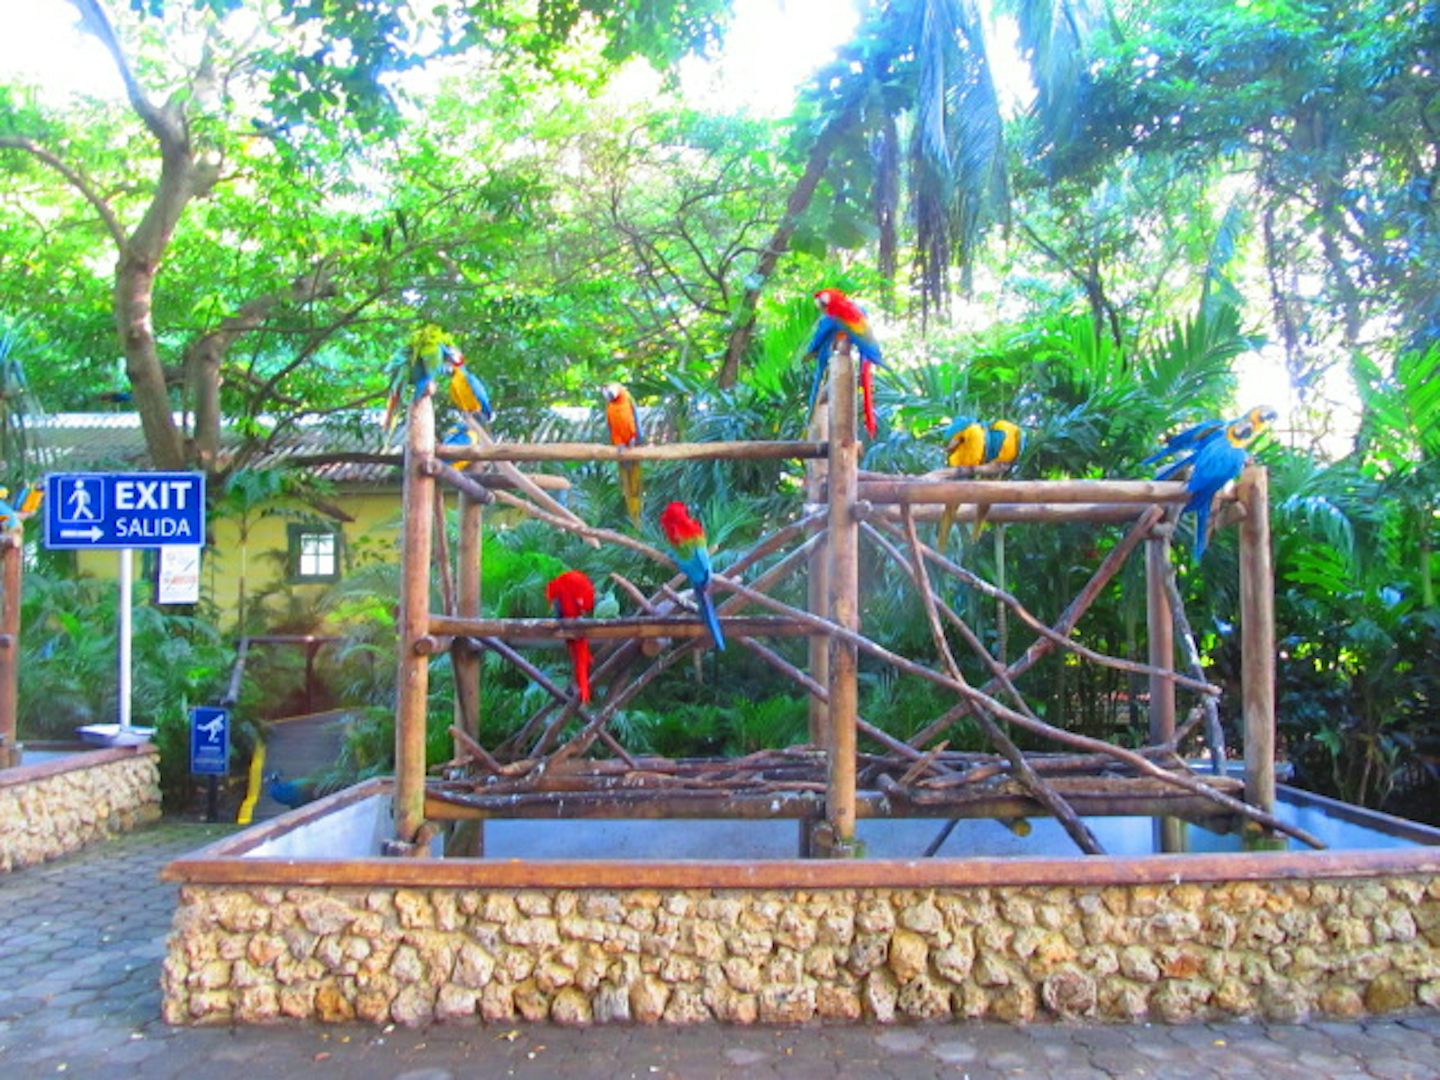 Birds at Aviary in Cartagena